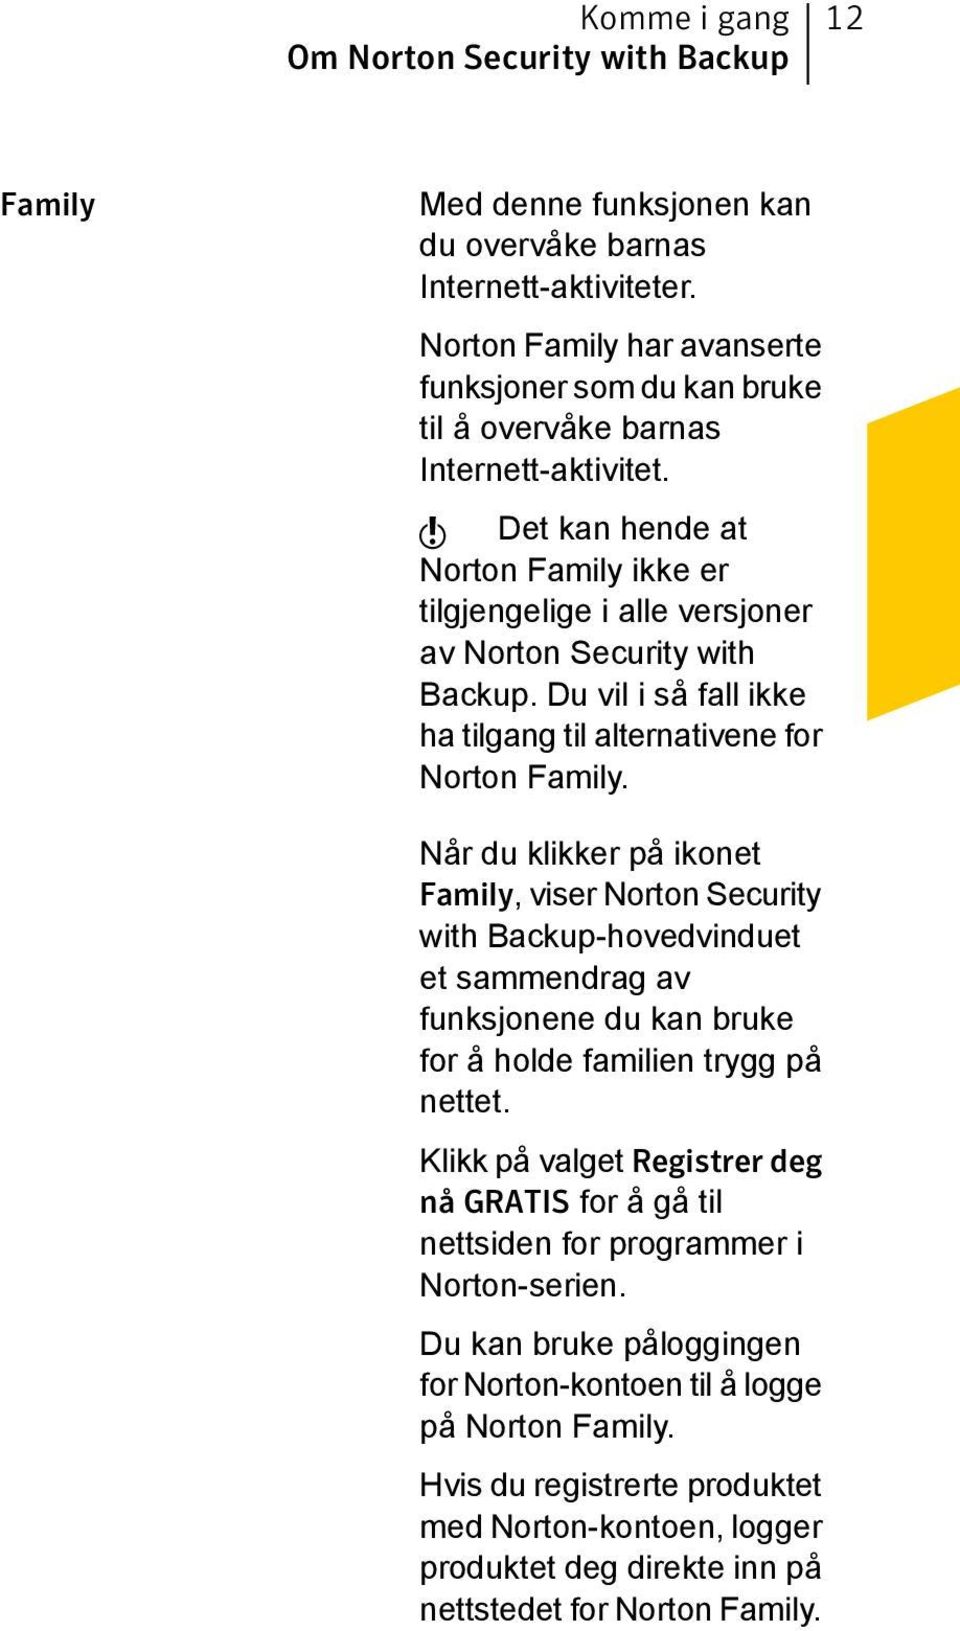 w Det kan hende at Norton Family ikke er tilgjengelige i alle versjoner av Norton Security with Backup. Du vil i så fall ikke ha tilgang til alternativene for Norton Family.